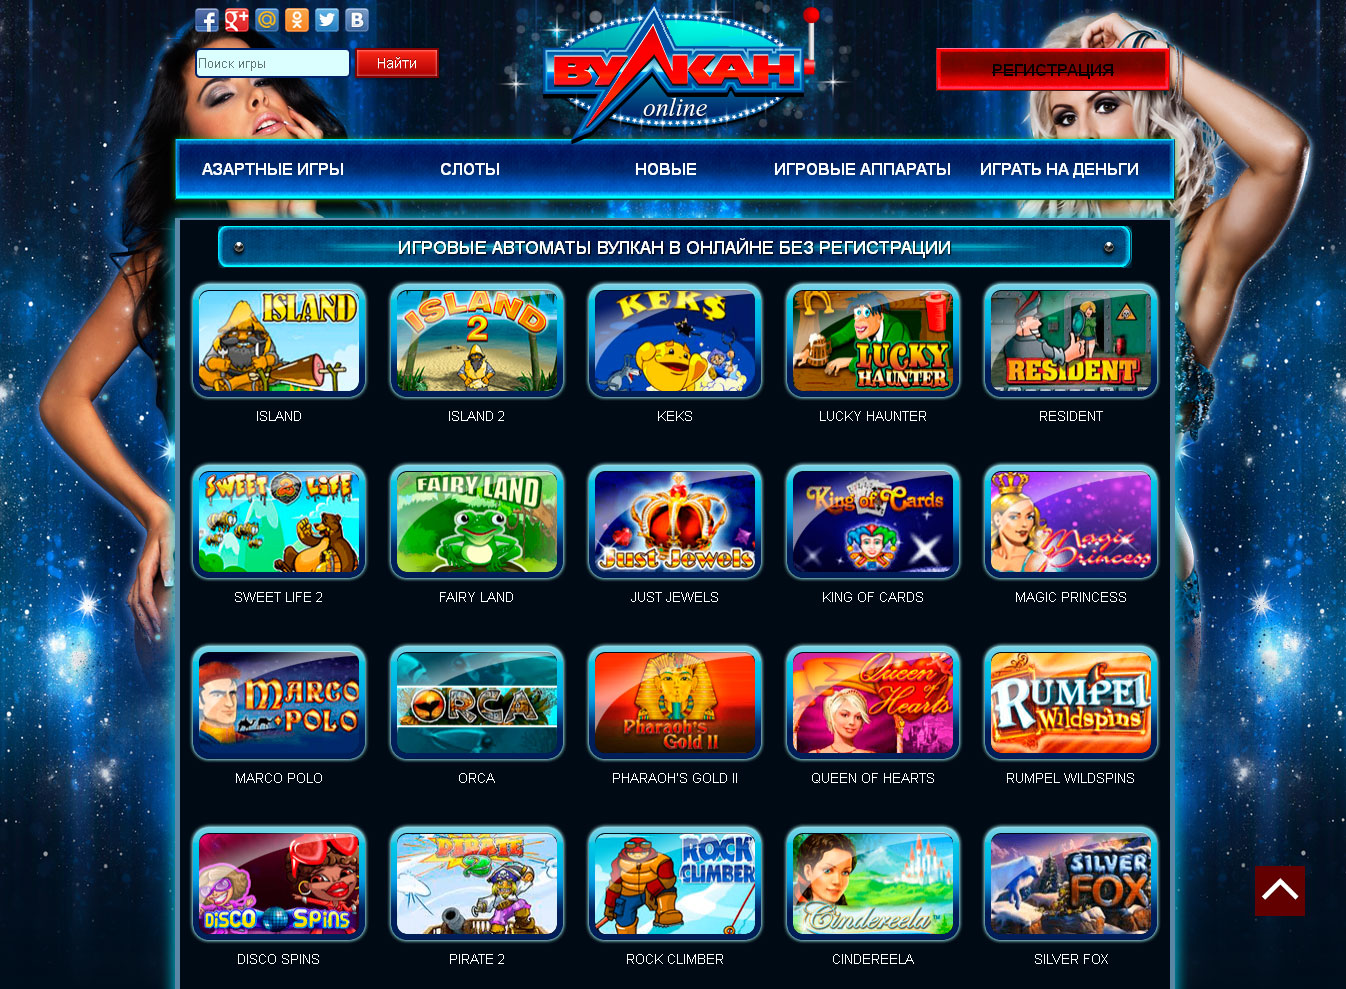 Игры в казино вулкан россия топ официальных казино онлайн